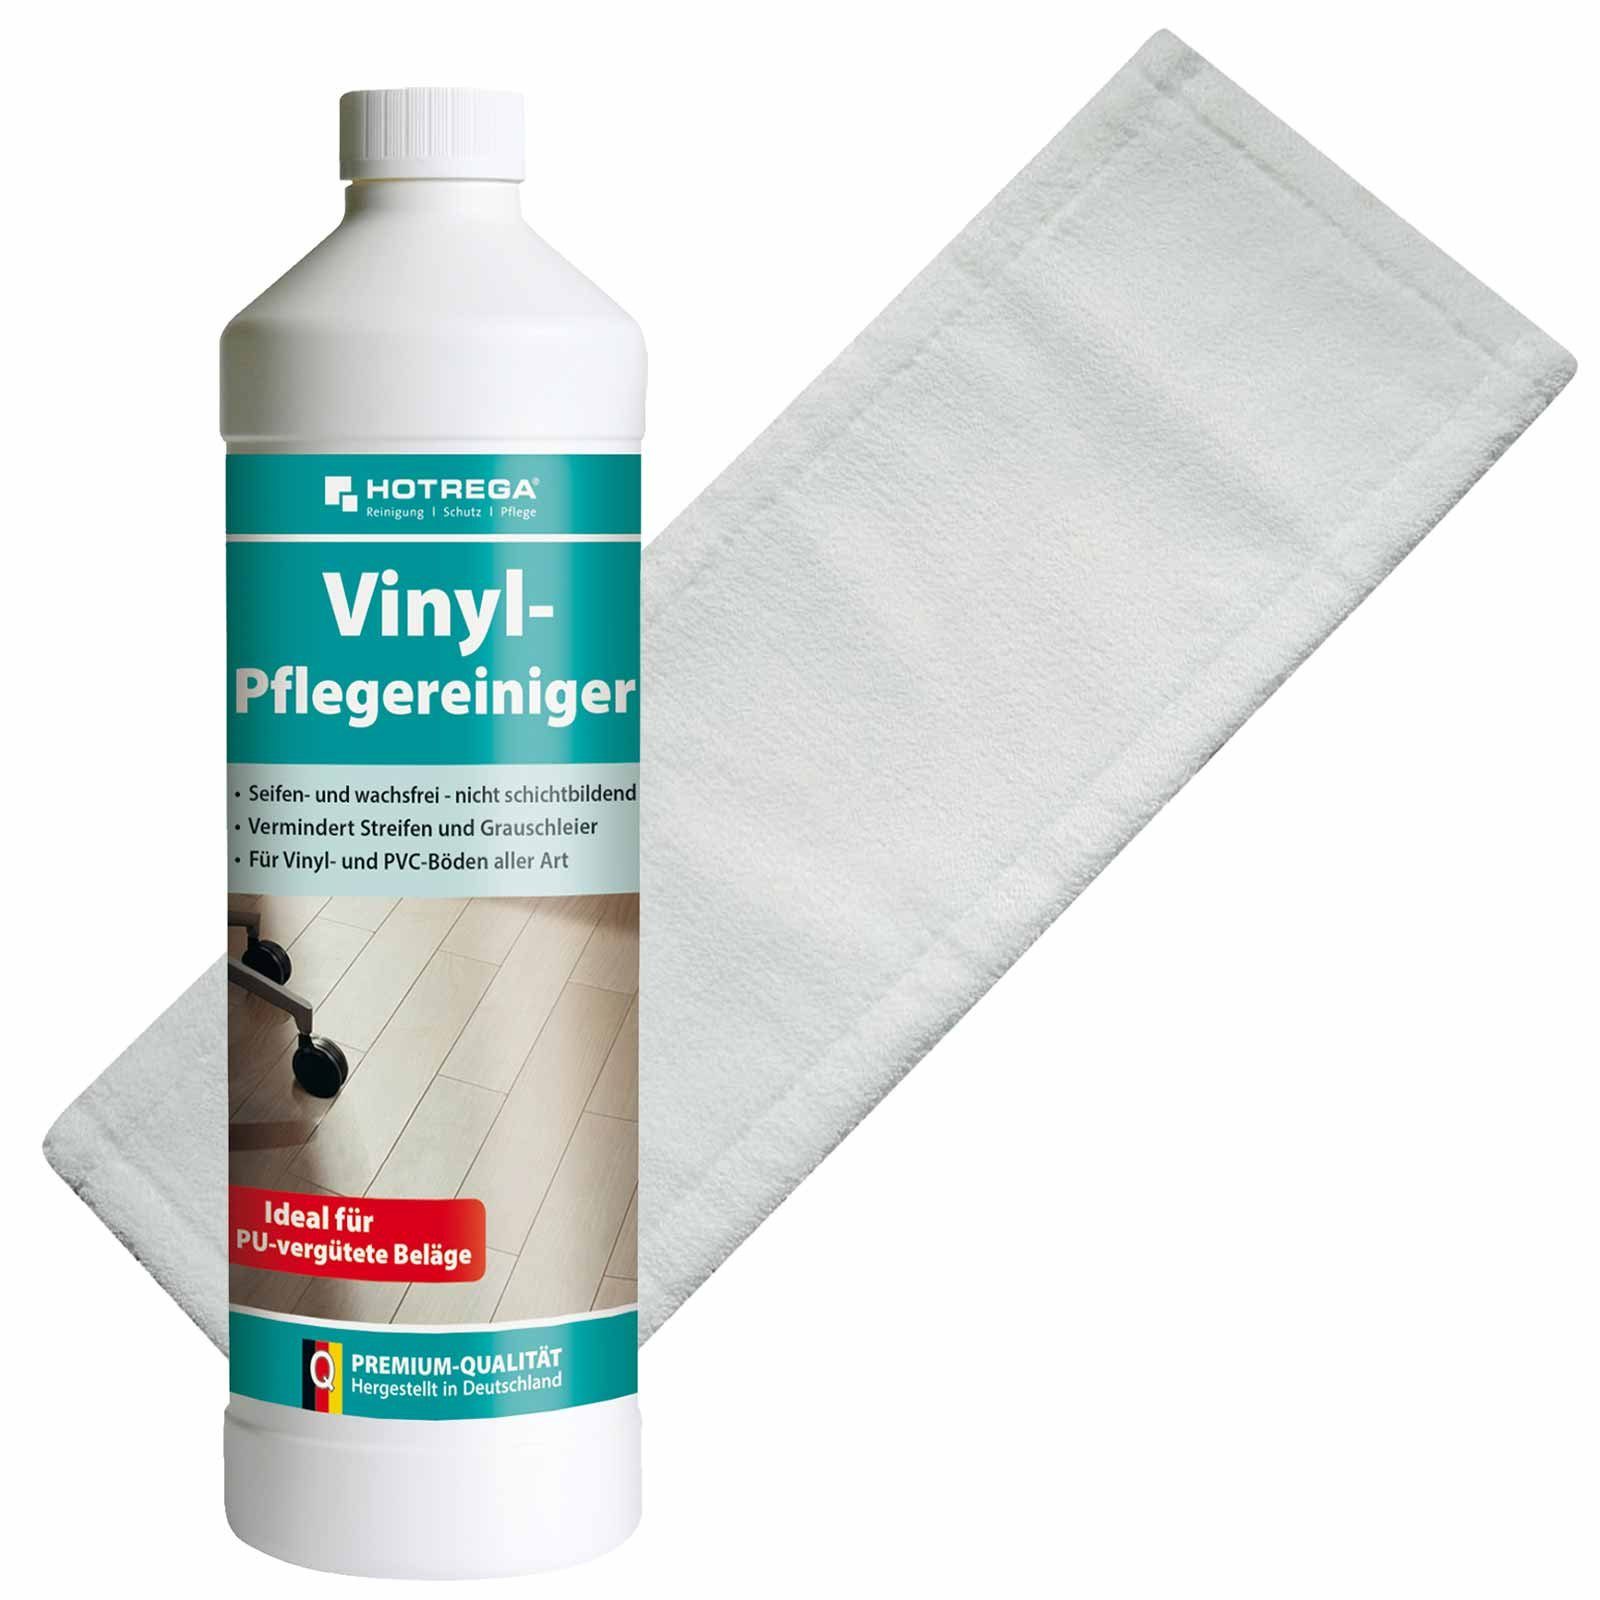 Microfasermopp 1 inkl. Vinyl Fussbodenreiniger Liter Pflegereiniger HOTREGA®